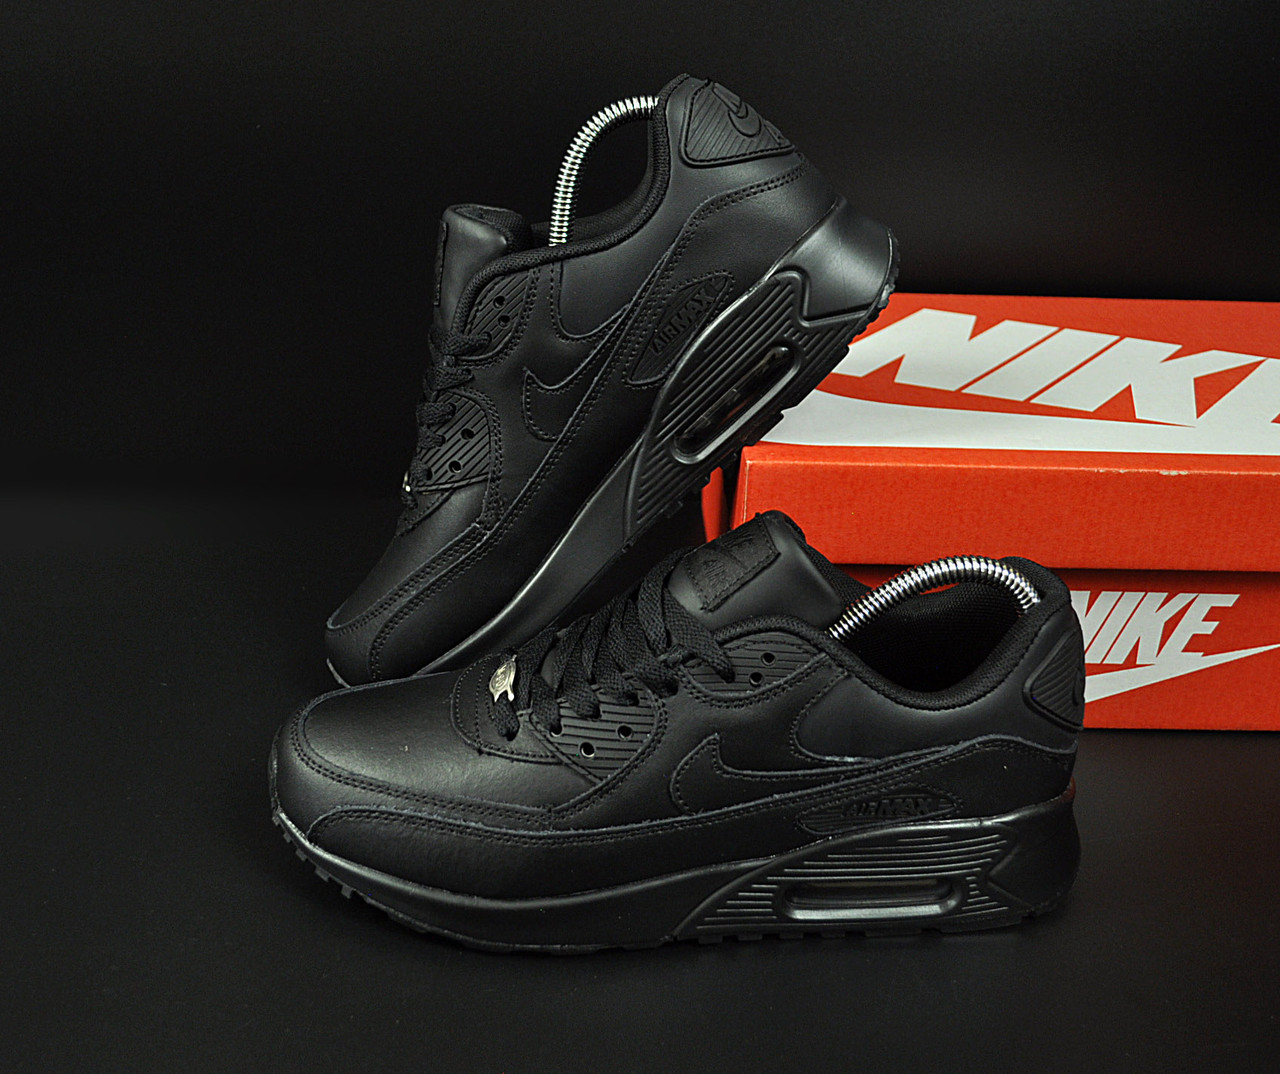 

Кроссовки мужские Nike Air Max 90 черные, Найк Аир Макс 90, натуральная кожа, код KR-20844